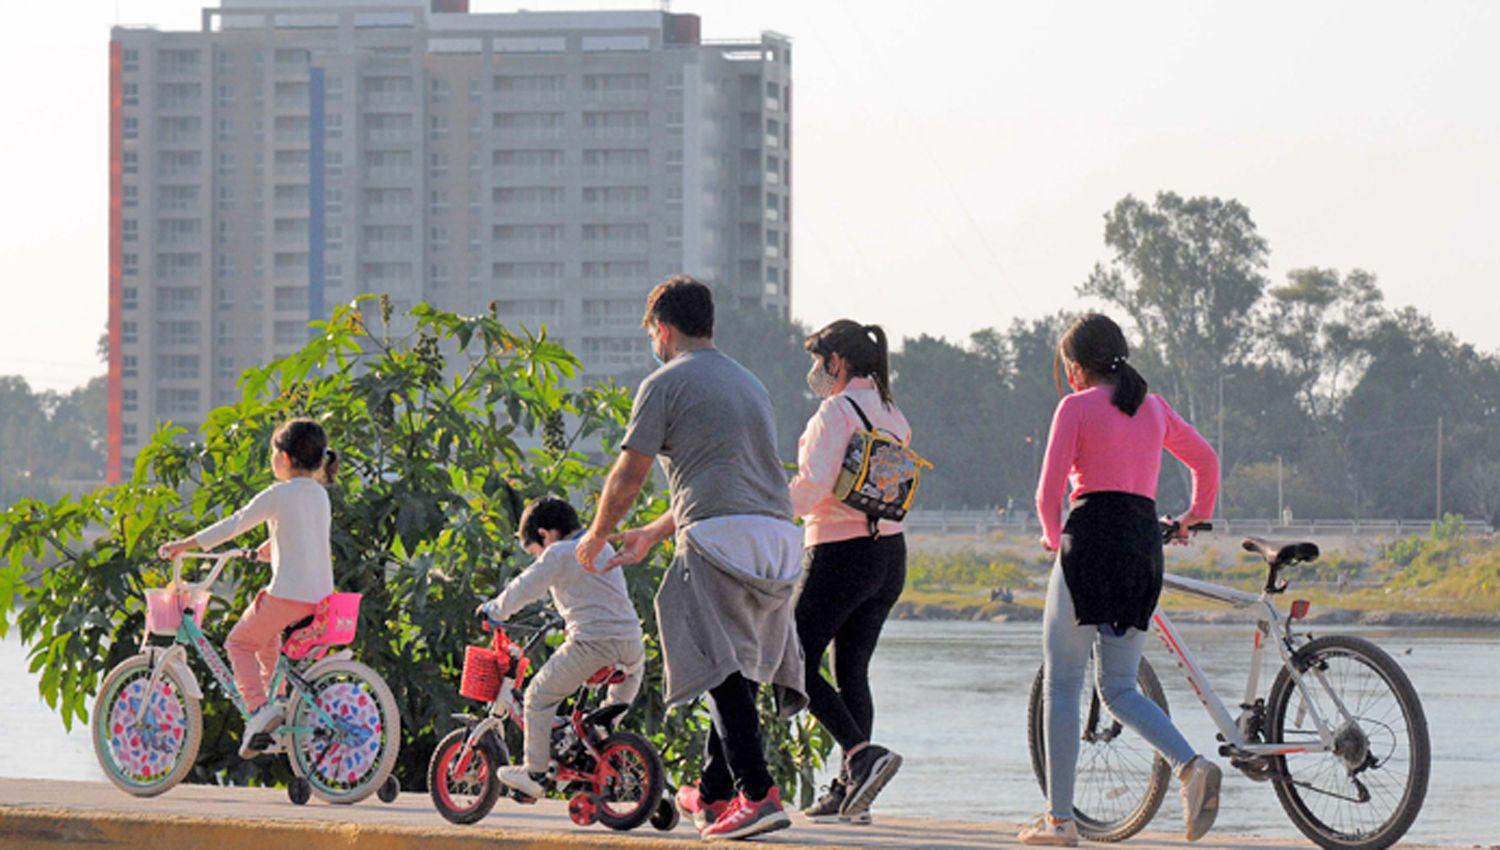 El Parque Aguirre y la zona de la costanera se colmaron de runners ciclistas y familias que paseaban en una jornada soleada